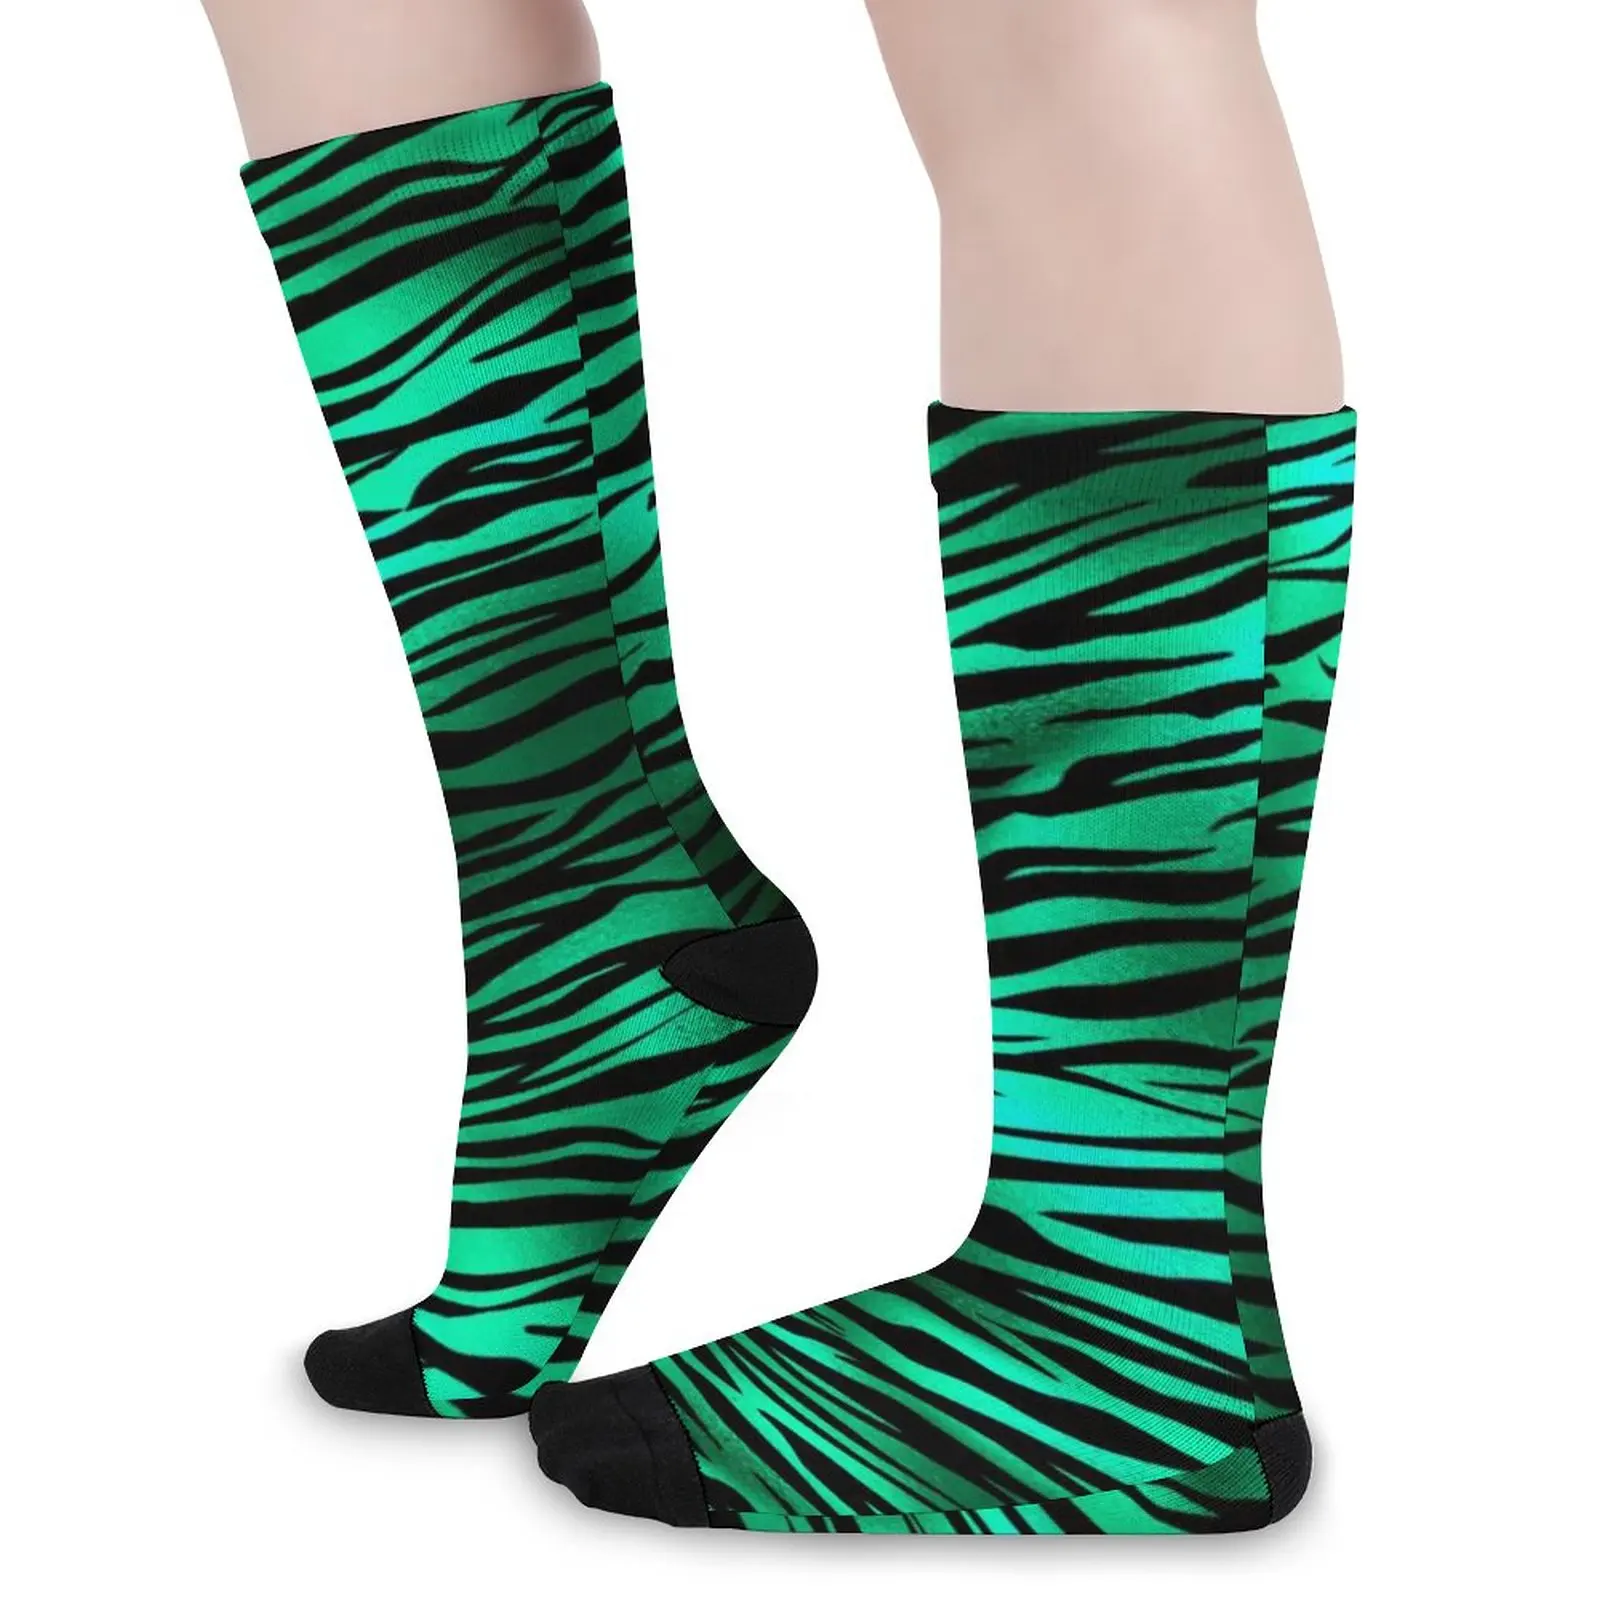 

Зеленые носки с леопардовым принтом, весенние изумрудные золотые дизайнерские чулки в стиле сафари, модные женские качественные носки, дизайнерские уличные носки с защитой от пота